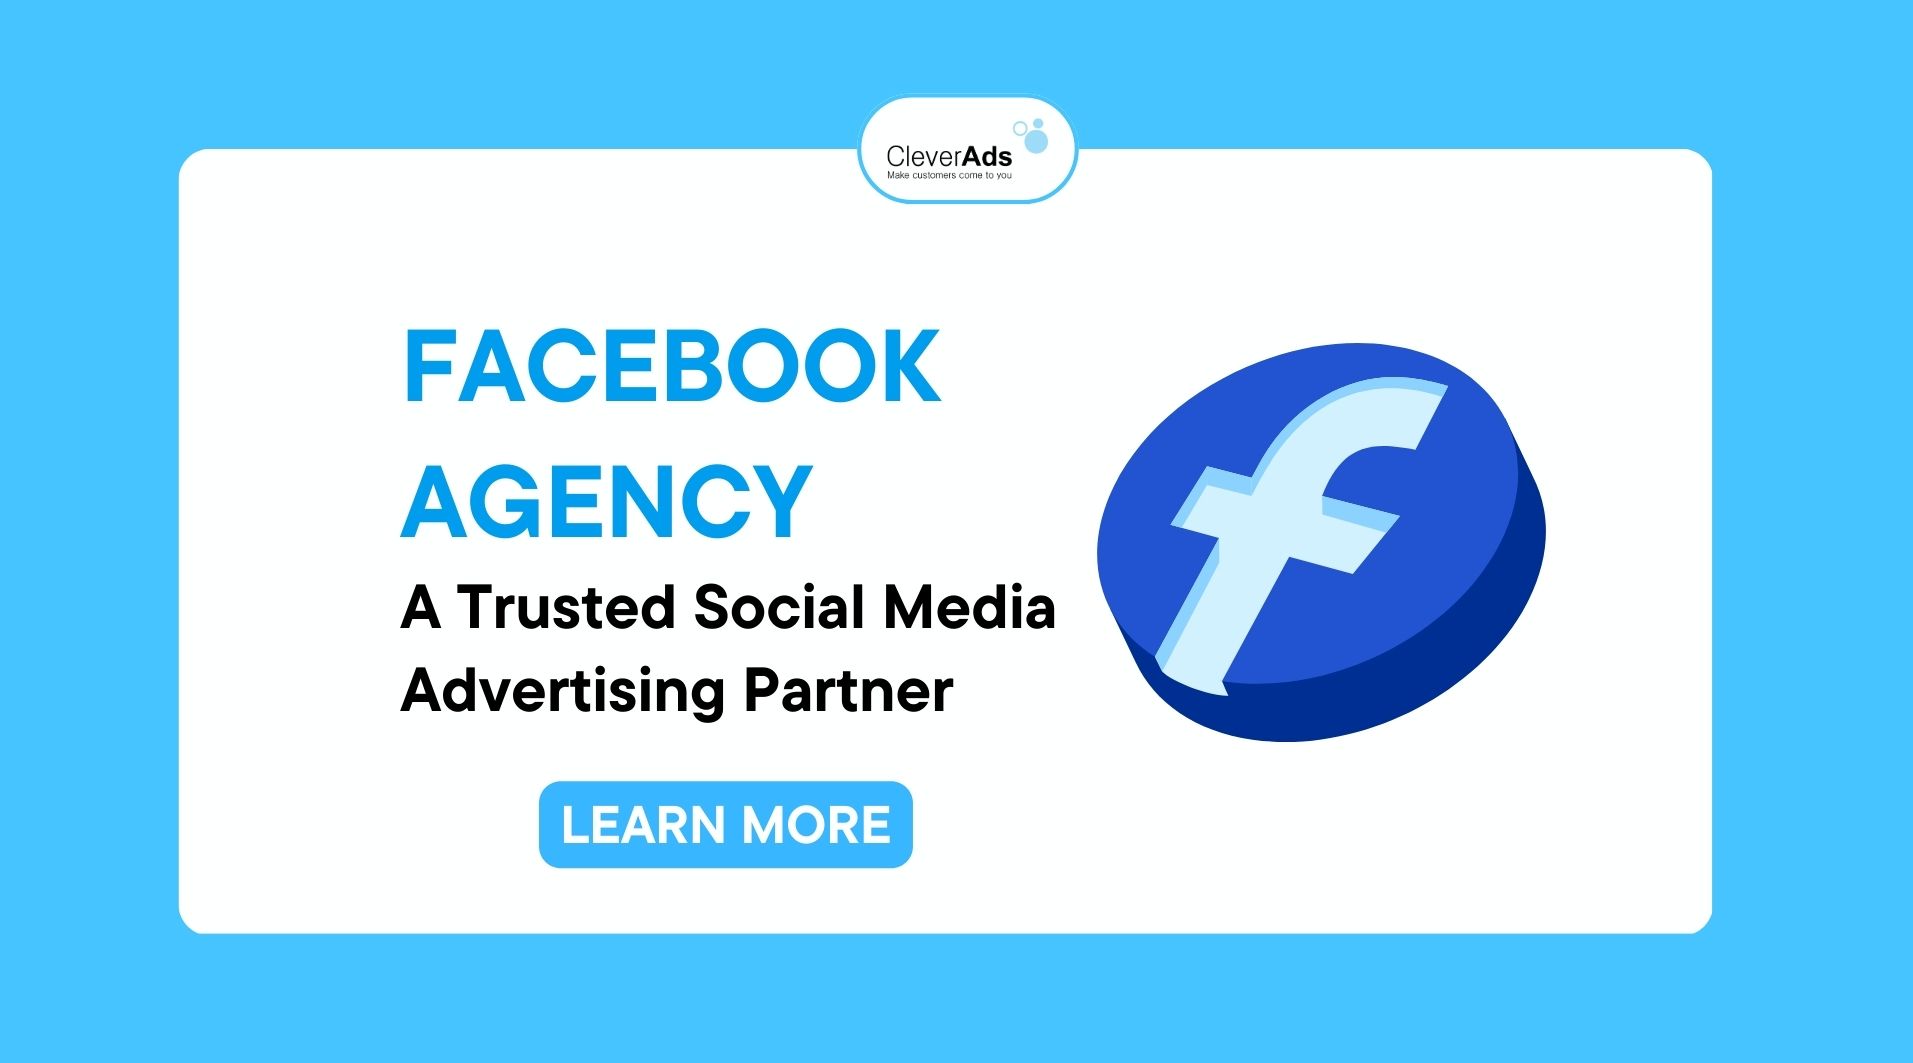 Facebook Agency – A Trusted Social Media Advertising Partner